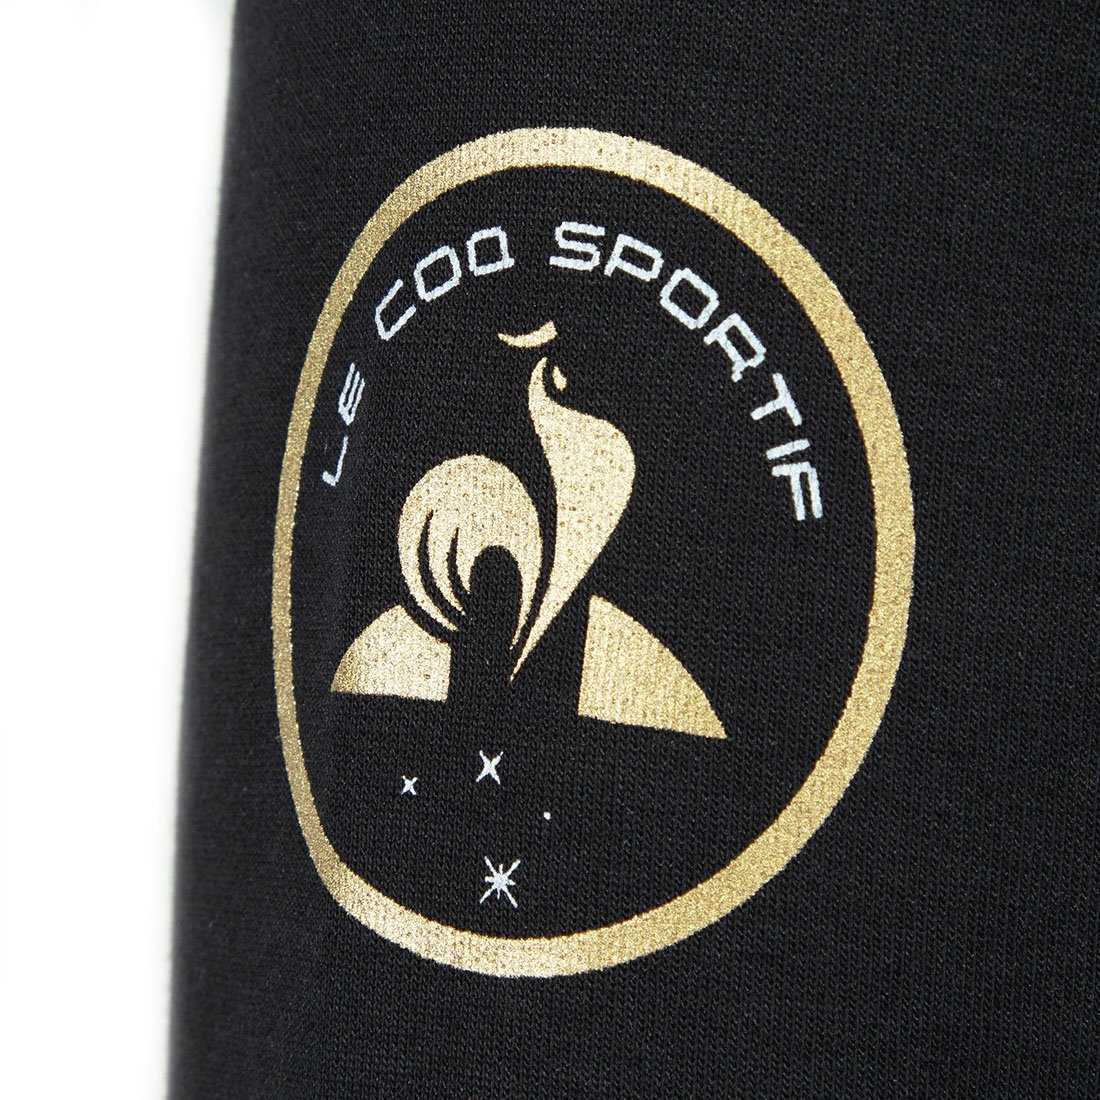 Le Coq Sportif x Soprano